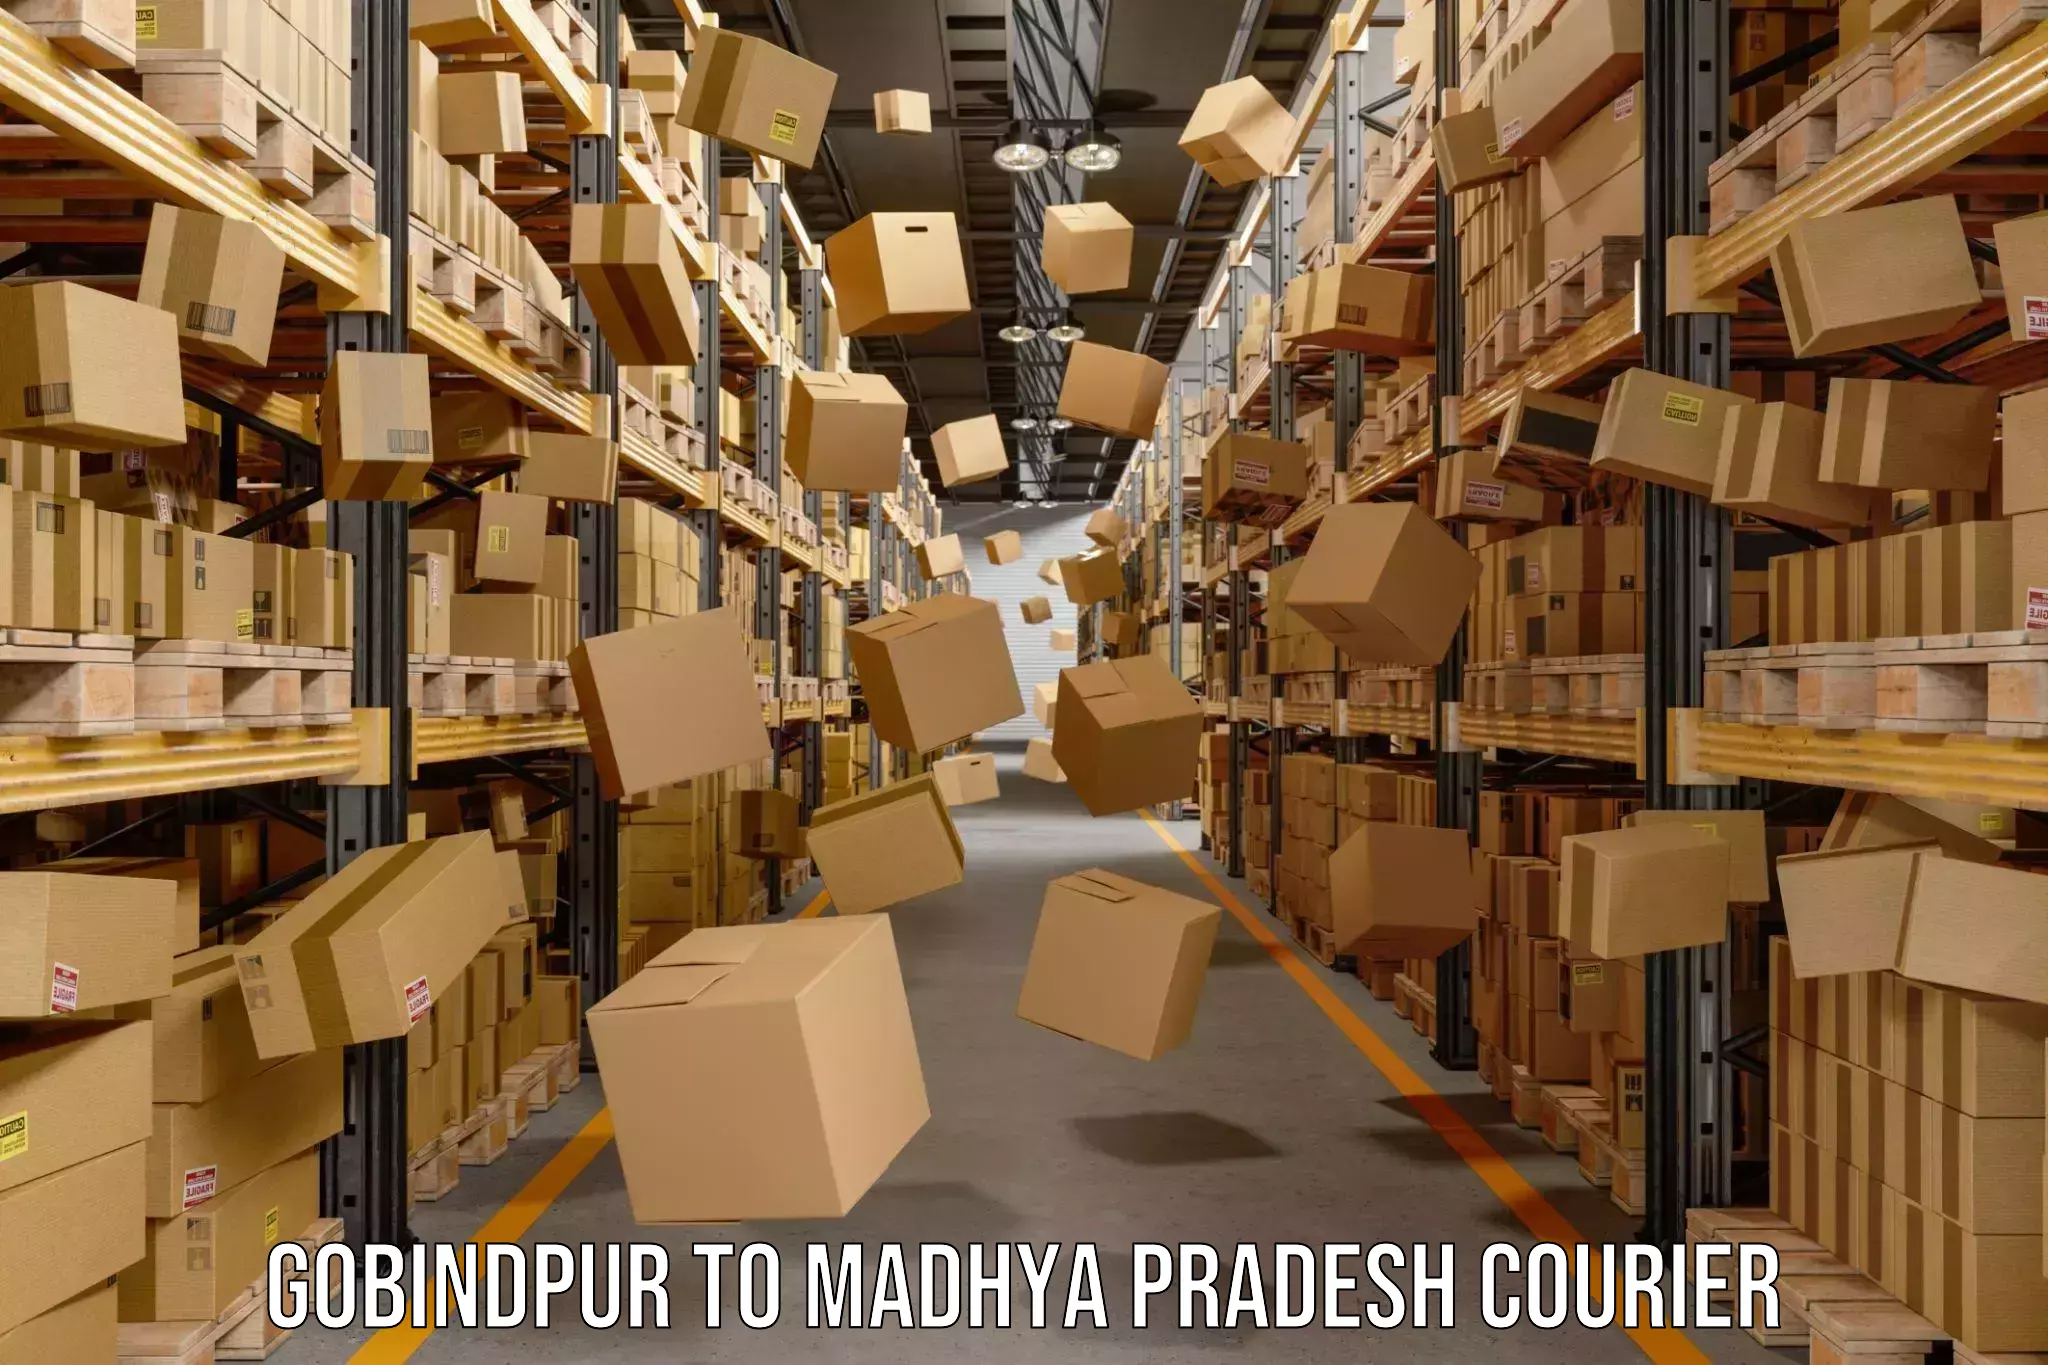 Custom courier packaging in Gobindpur to Madhya Pradesh